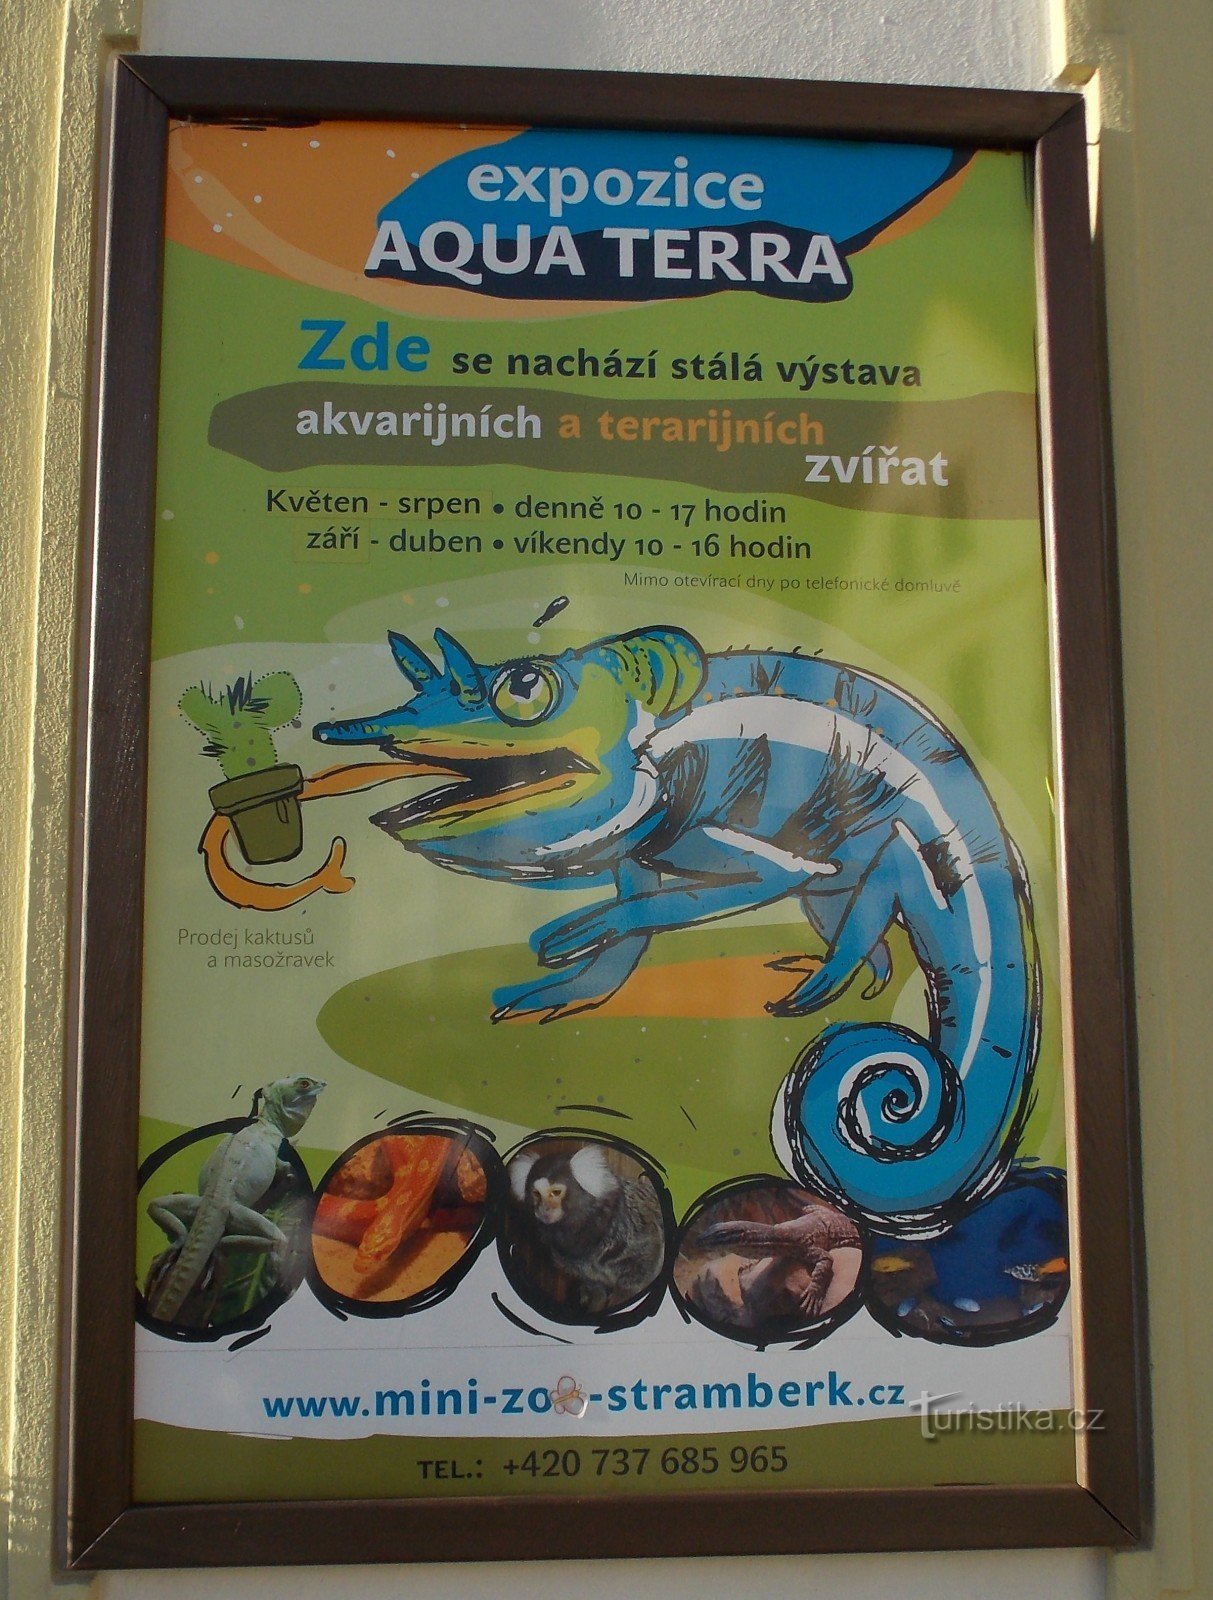 MINI - Grădina Zoologică Aqua Terra din Štramberk